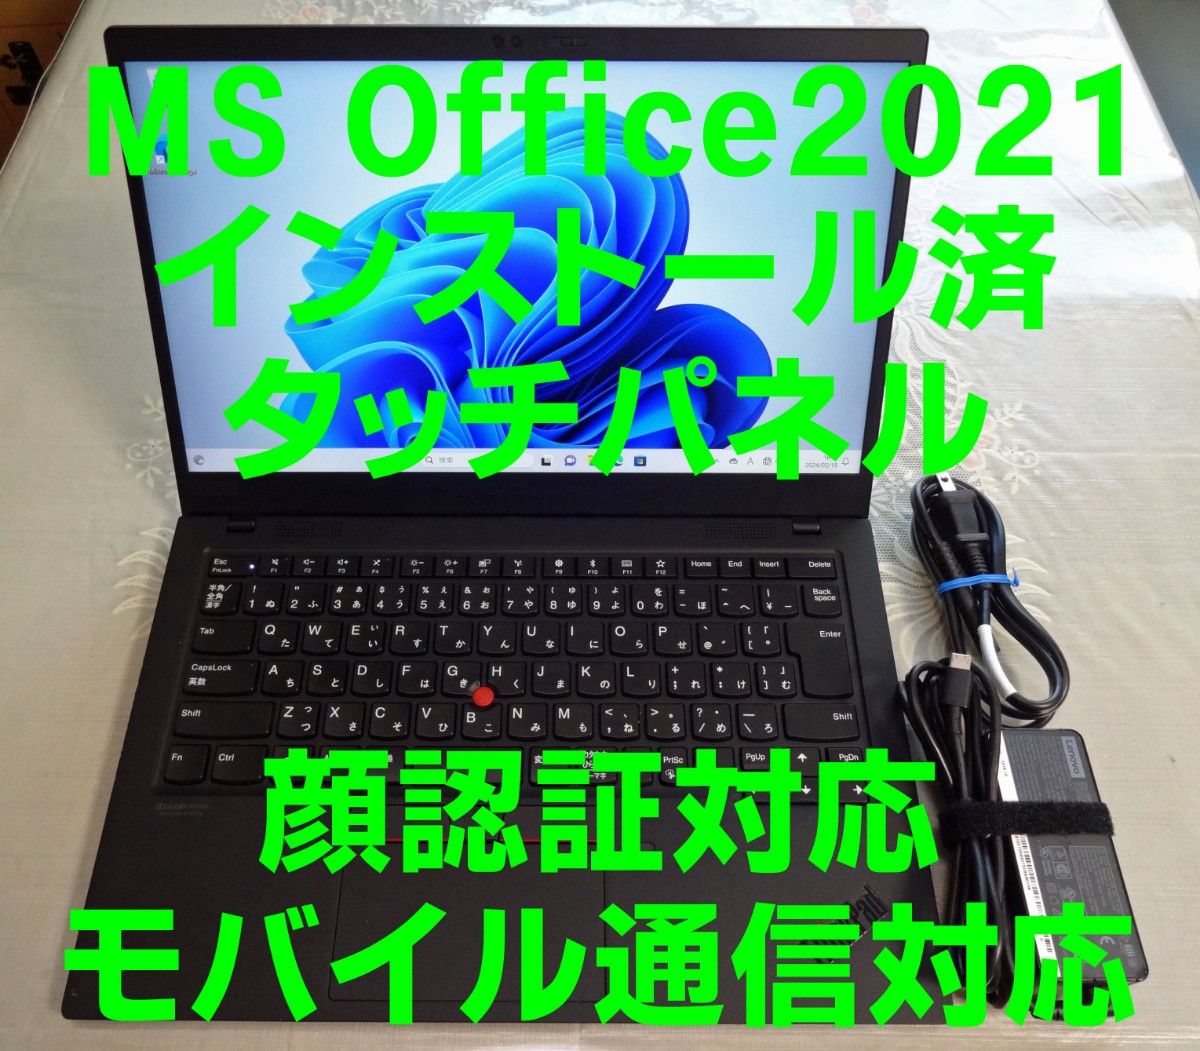 ThinkPad X1 Carbon i5 8365U タッチパネル 顔認証 モバイル通信対応 Office2021